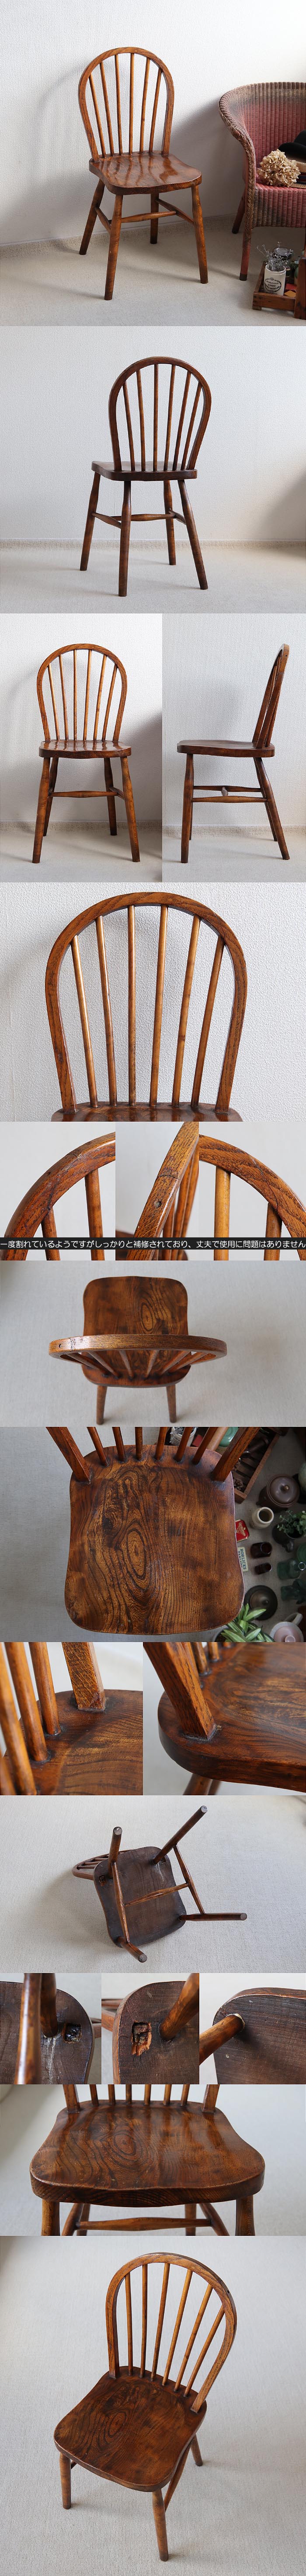 イギリス アンティーク フープバックチェア 木製椅子 ウィンザーチェア